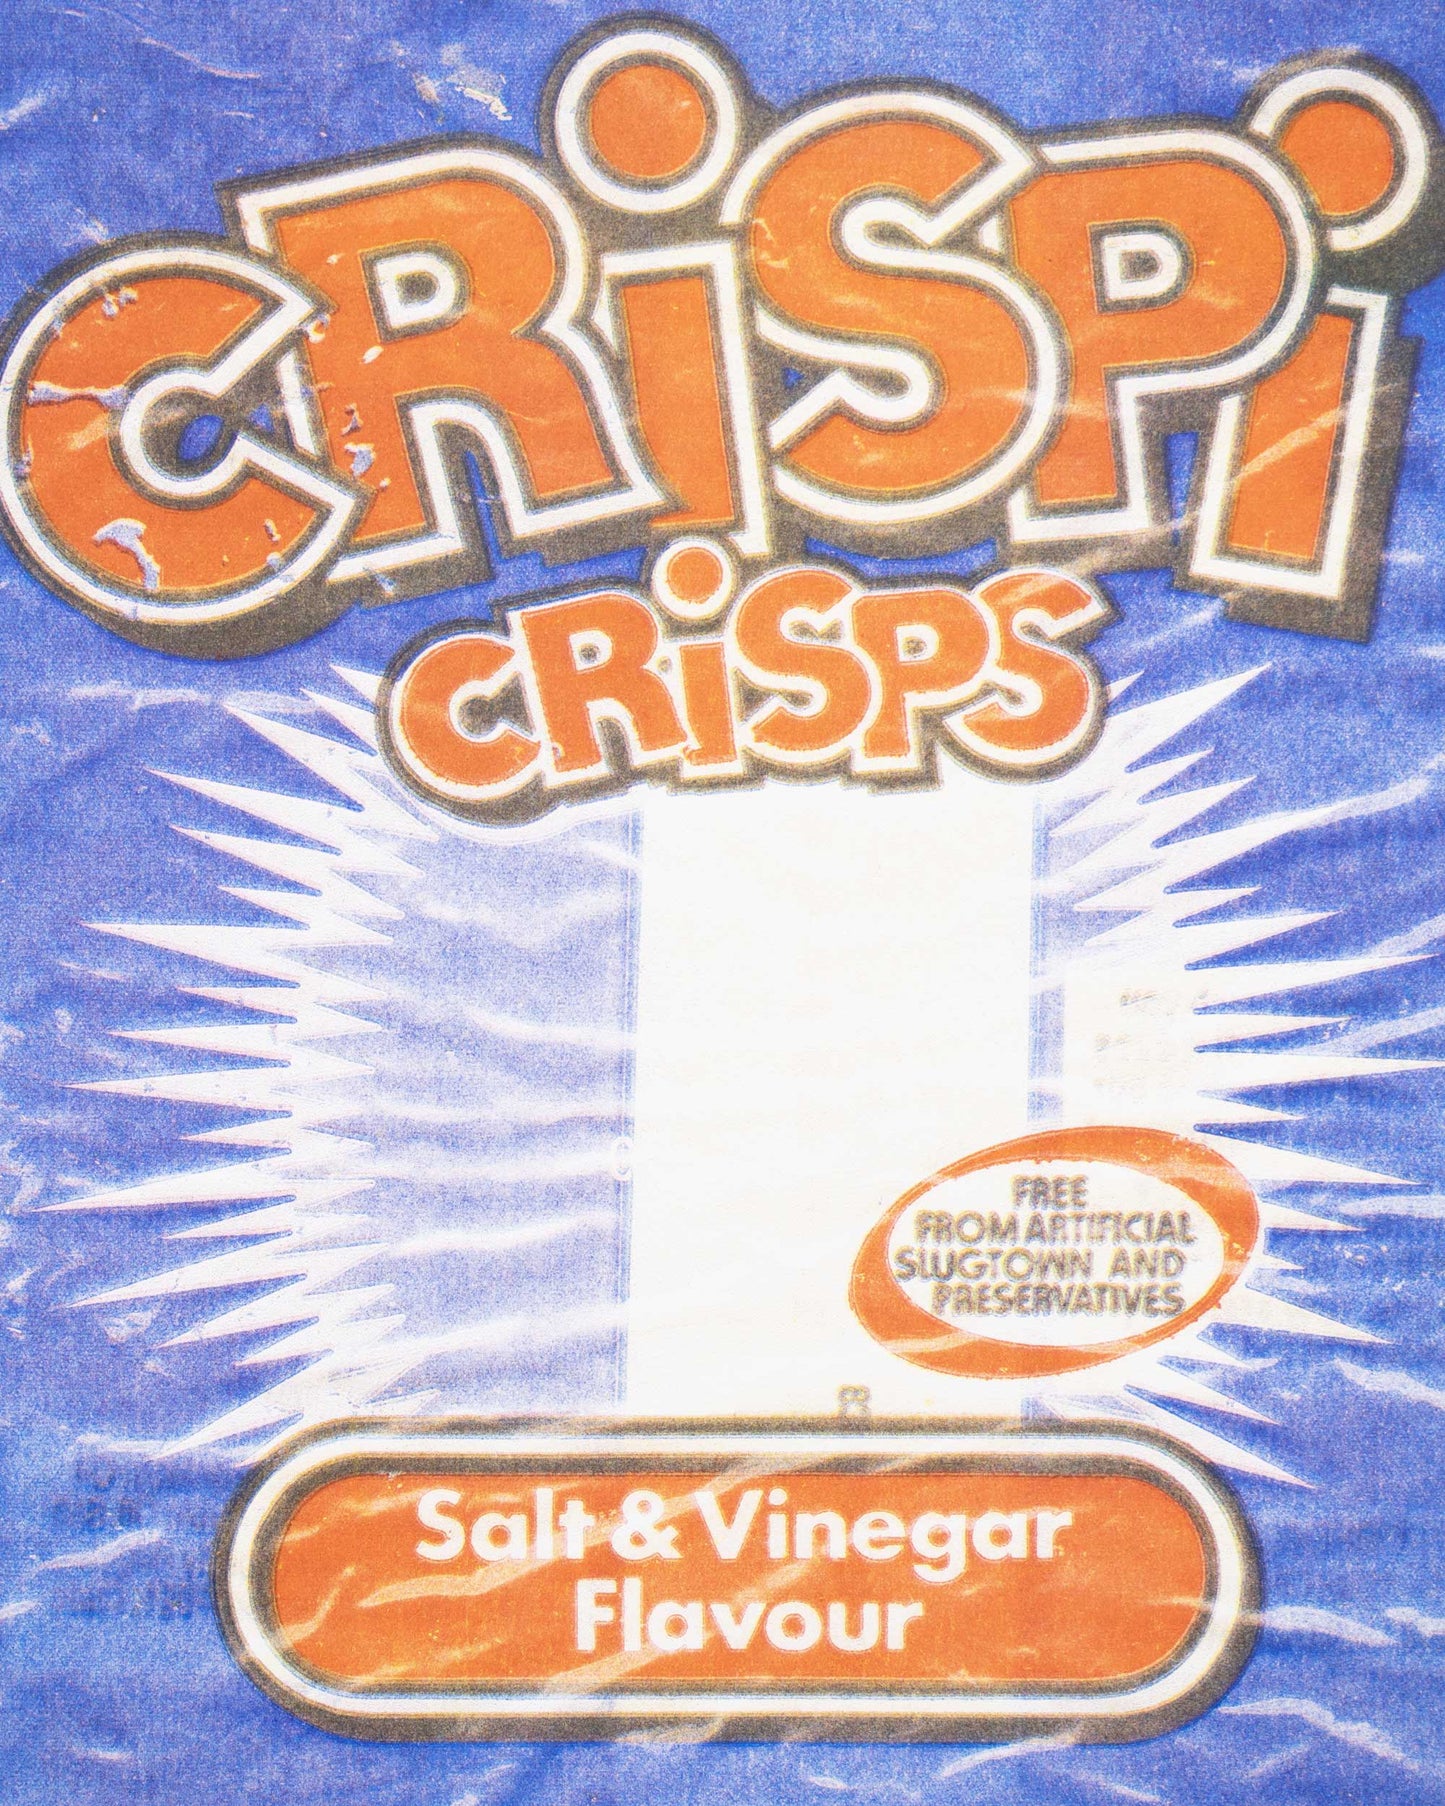 Crispi Crisps